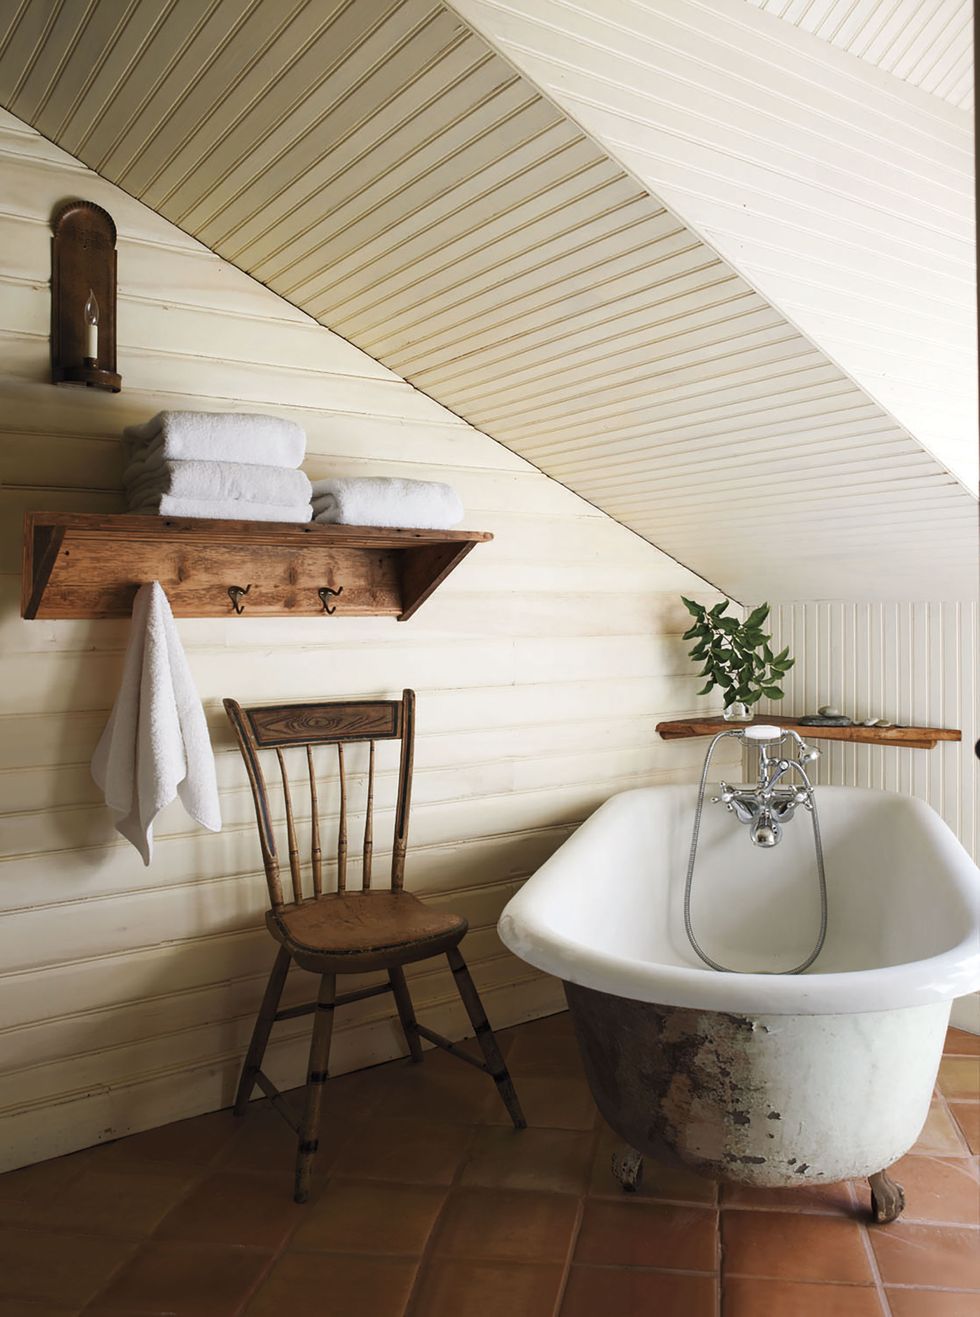 9 Ways to Make Your Bath Feel Like A Spa - The Honeycomb Home